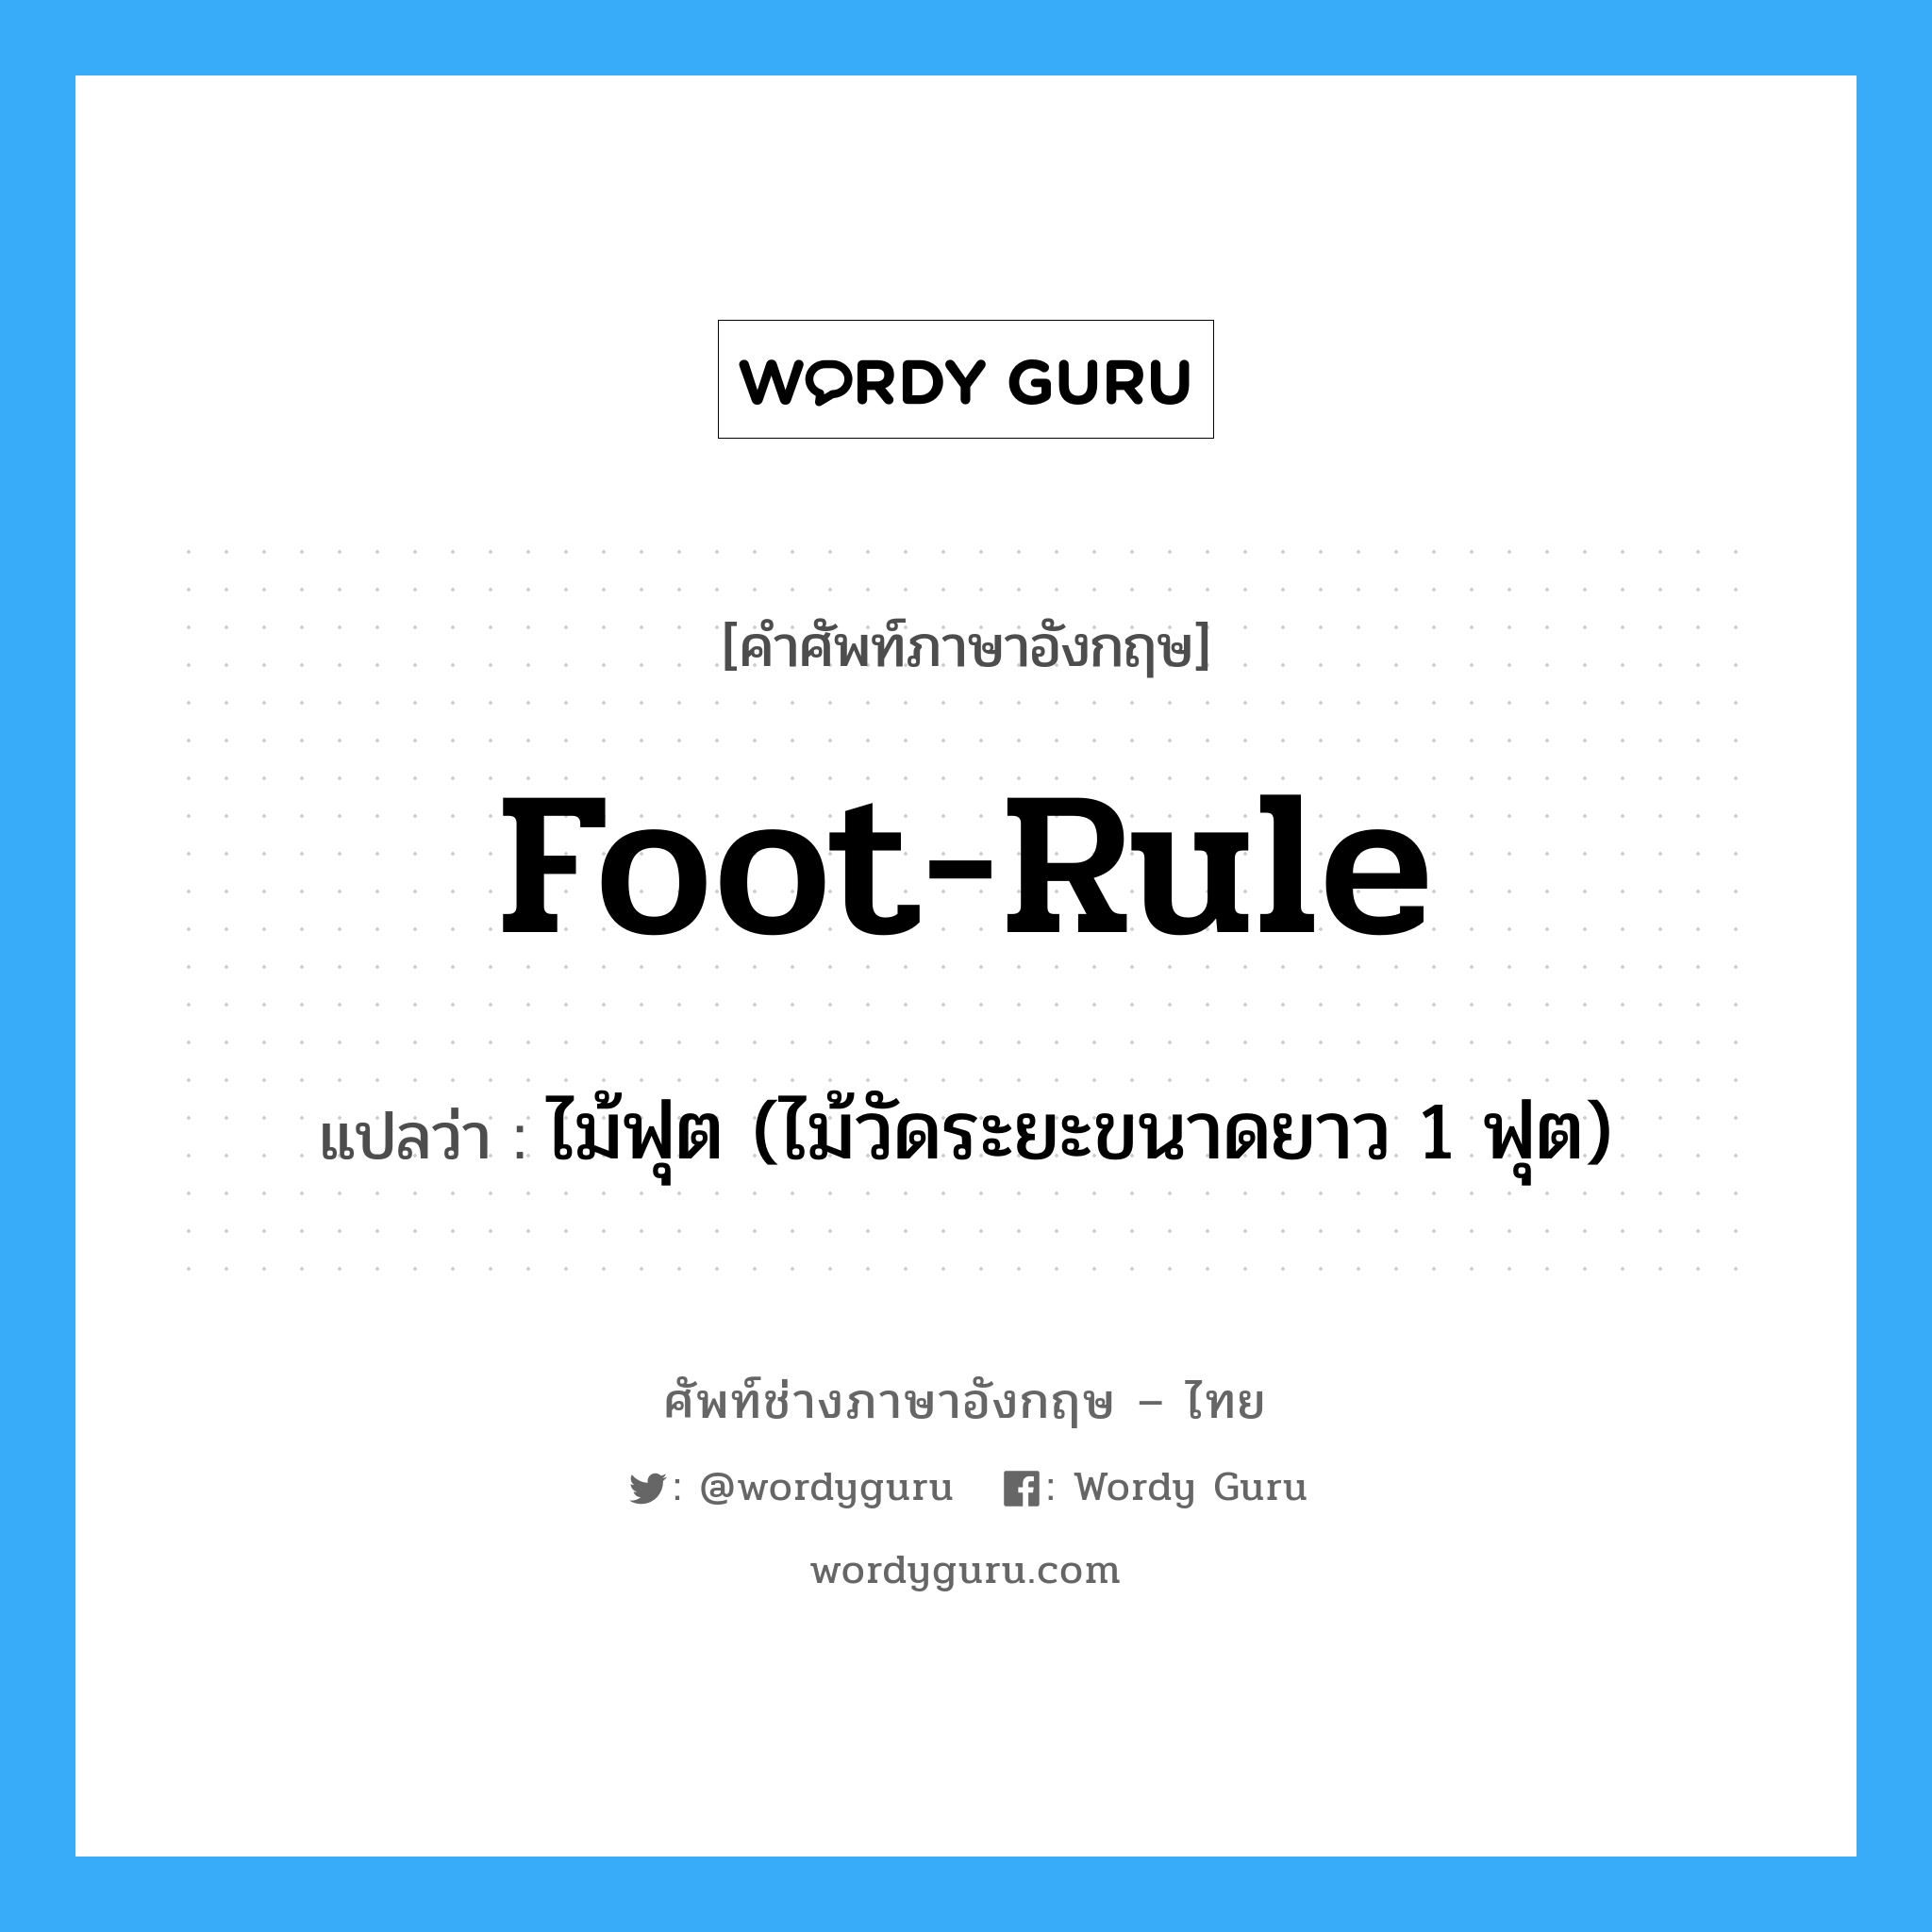 foot-rule แปลว่า?, คำศัพท์ช่างภาษาอังกฤษ - ไทย foot-rule คำศัพท์ภาษาอังกฤษ foot-rule แปลว่า ไม้ฟุต (ไม้วัดระยะขนาดยาว 1 ฟุต)